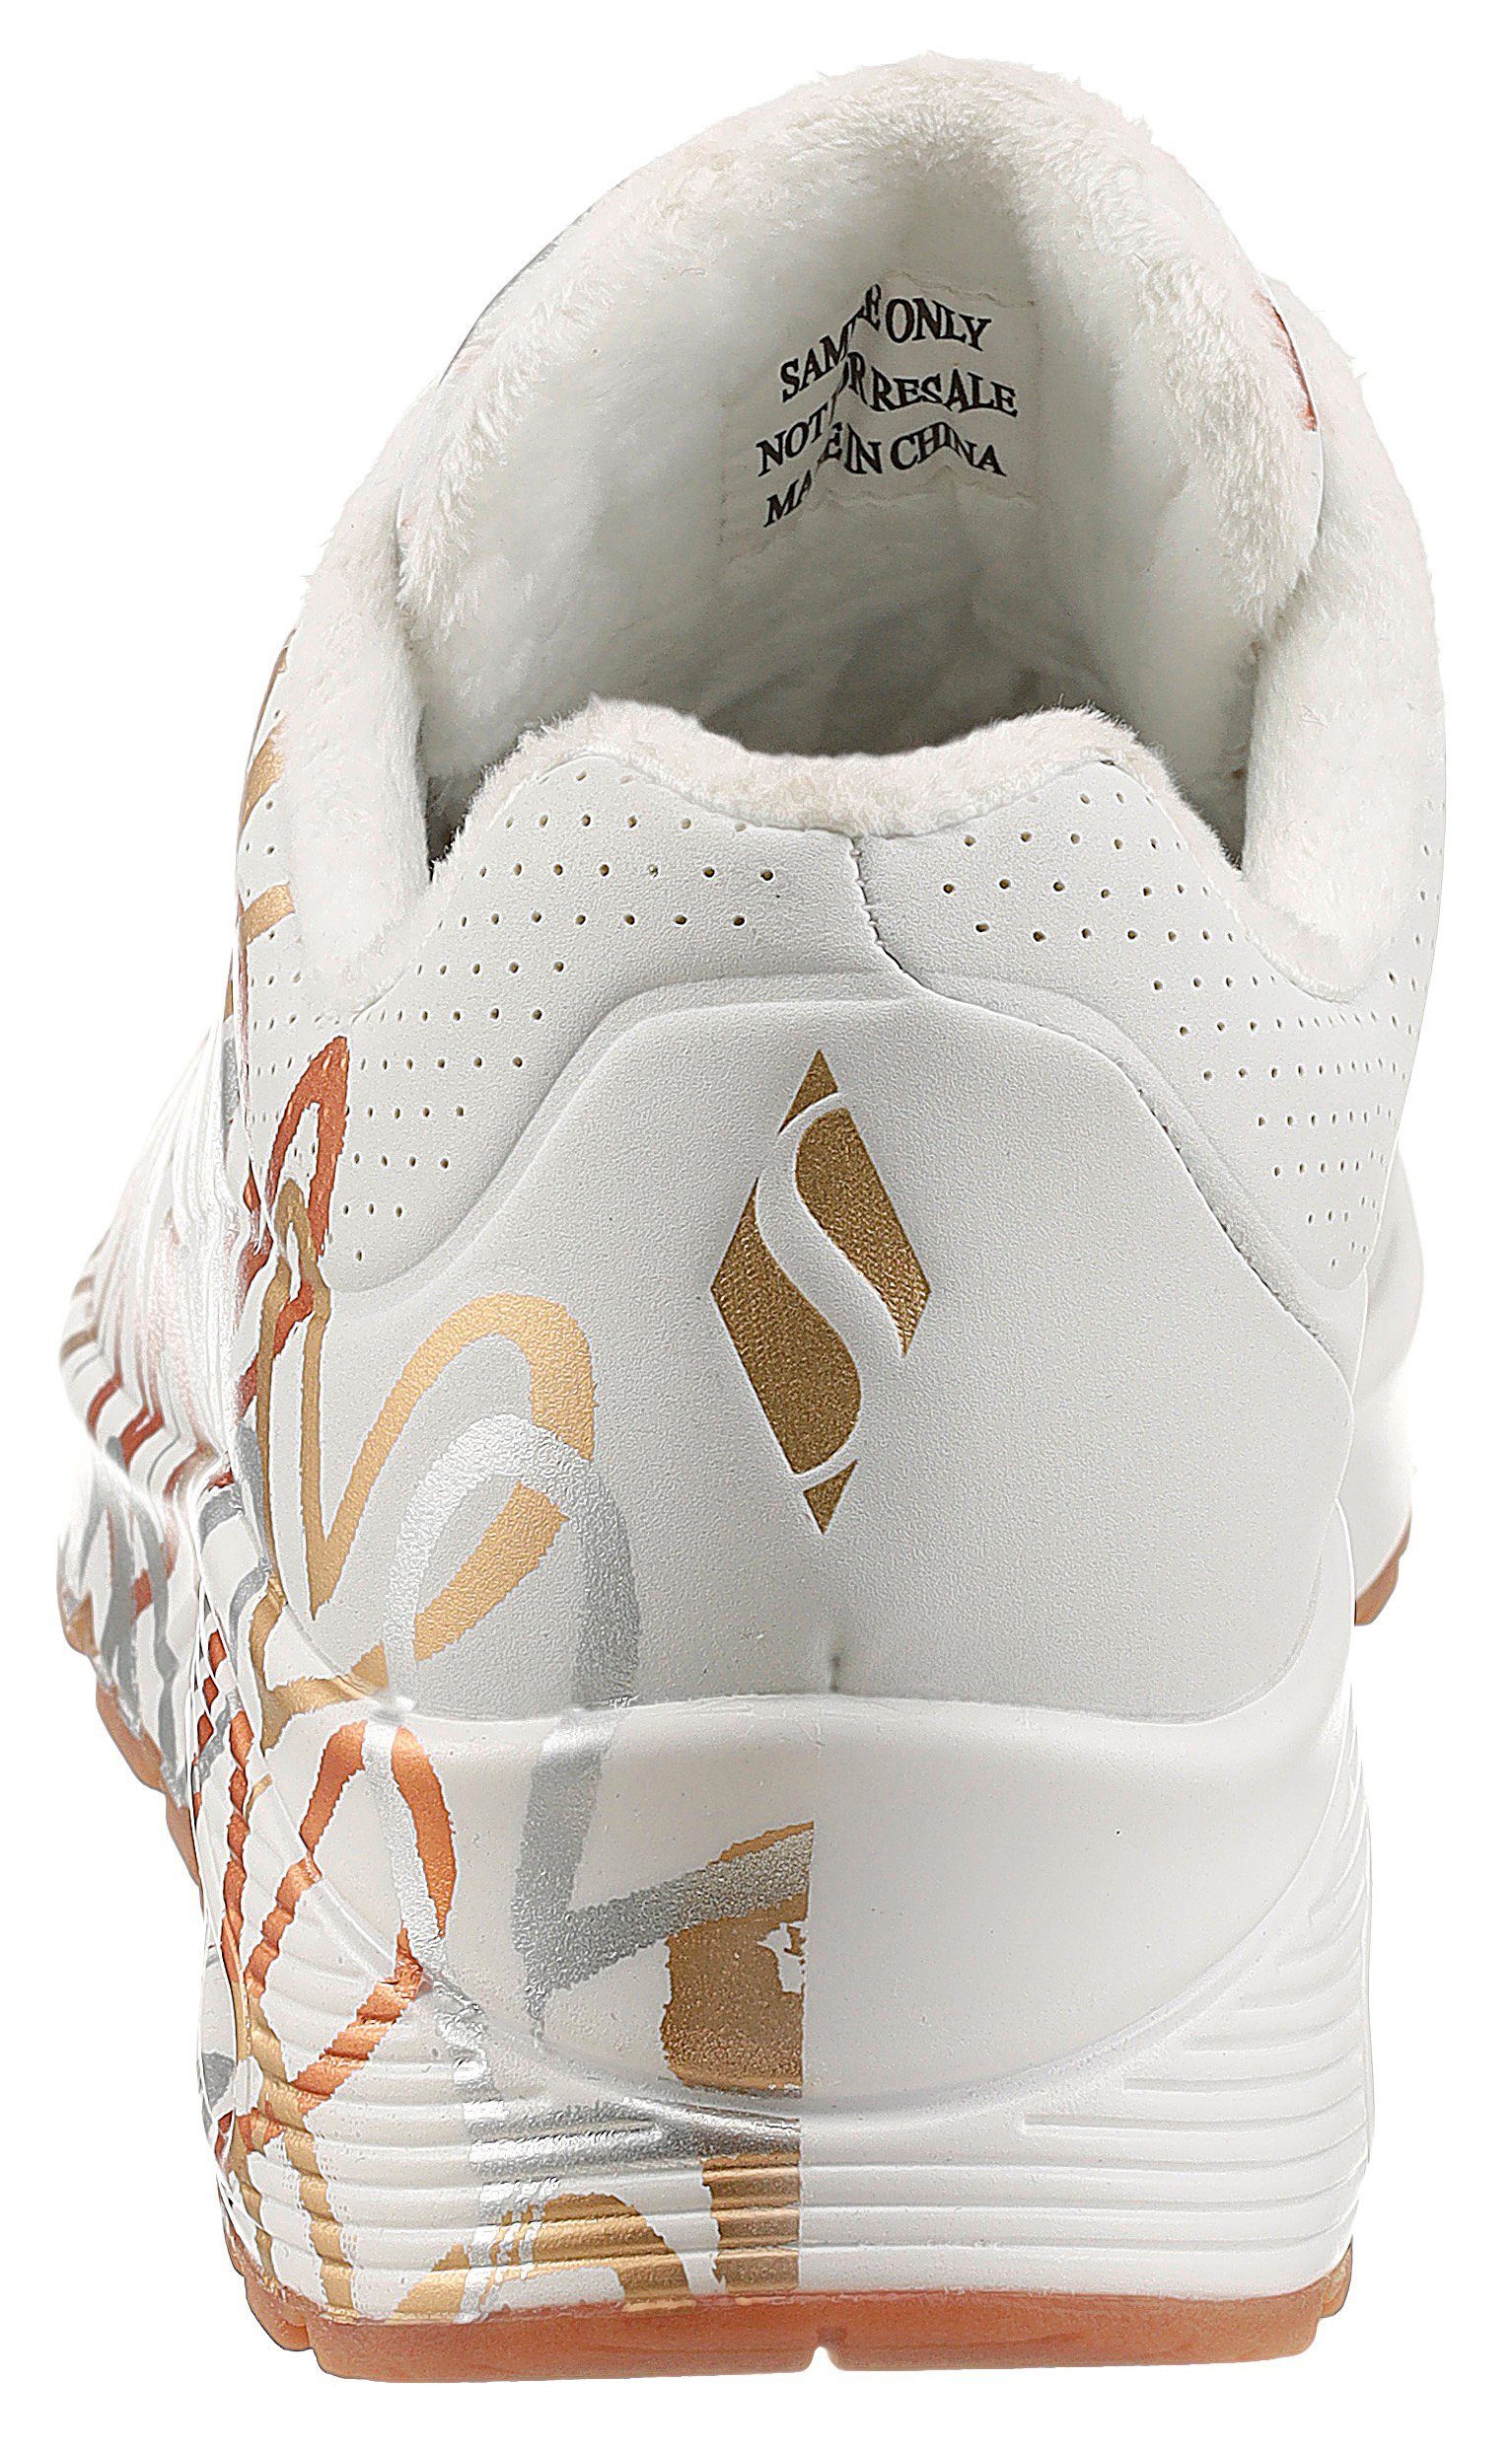 METALLIC Sneaker trendigen - LOVE Skechers UNO mit weiß-goldfarben Metallic-Print